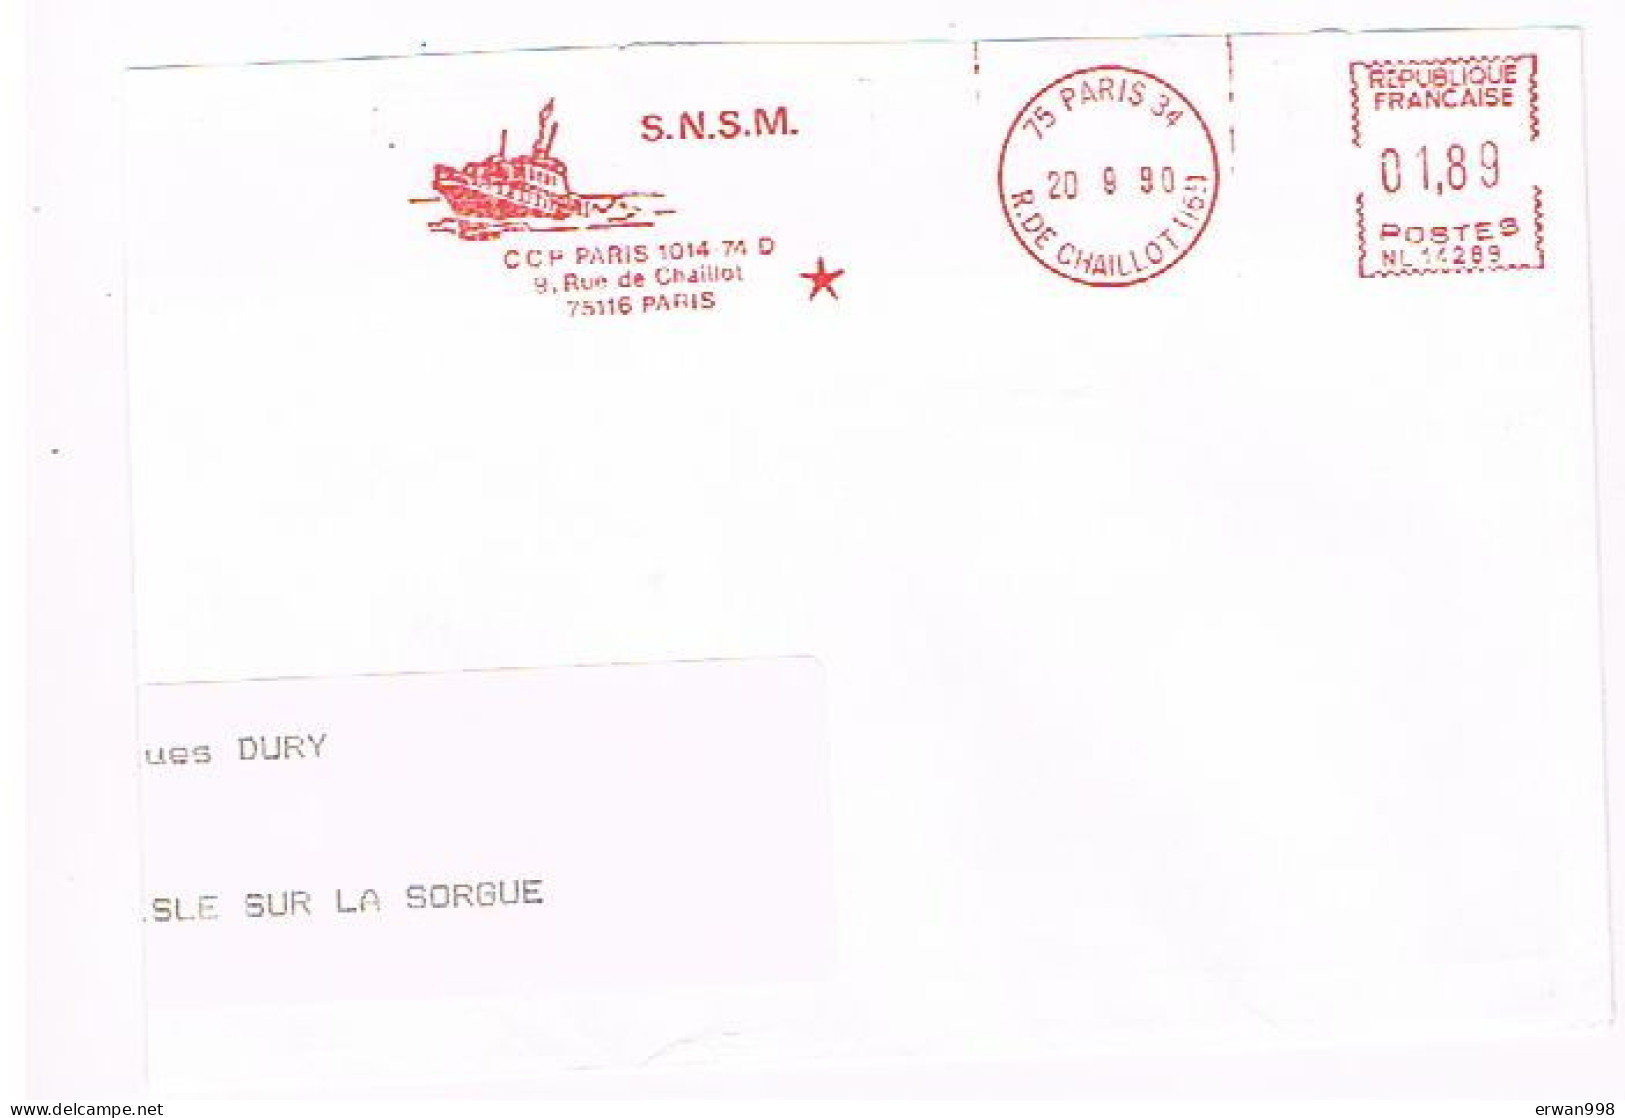 75 PARIS 34     - EMA Rouge Du 20/9/1990 S.N.S.M. (secours Maritime) Thème Bâteau  83 - Bateaux